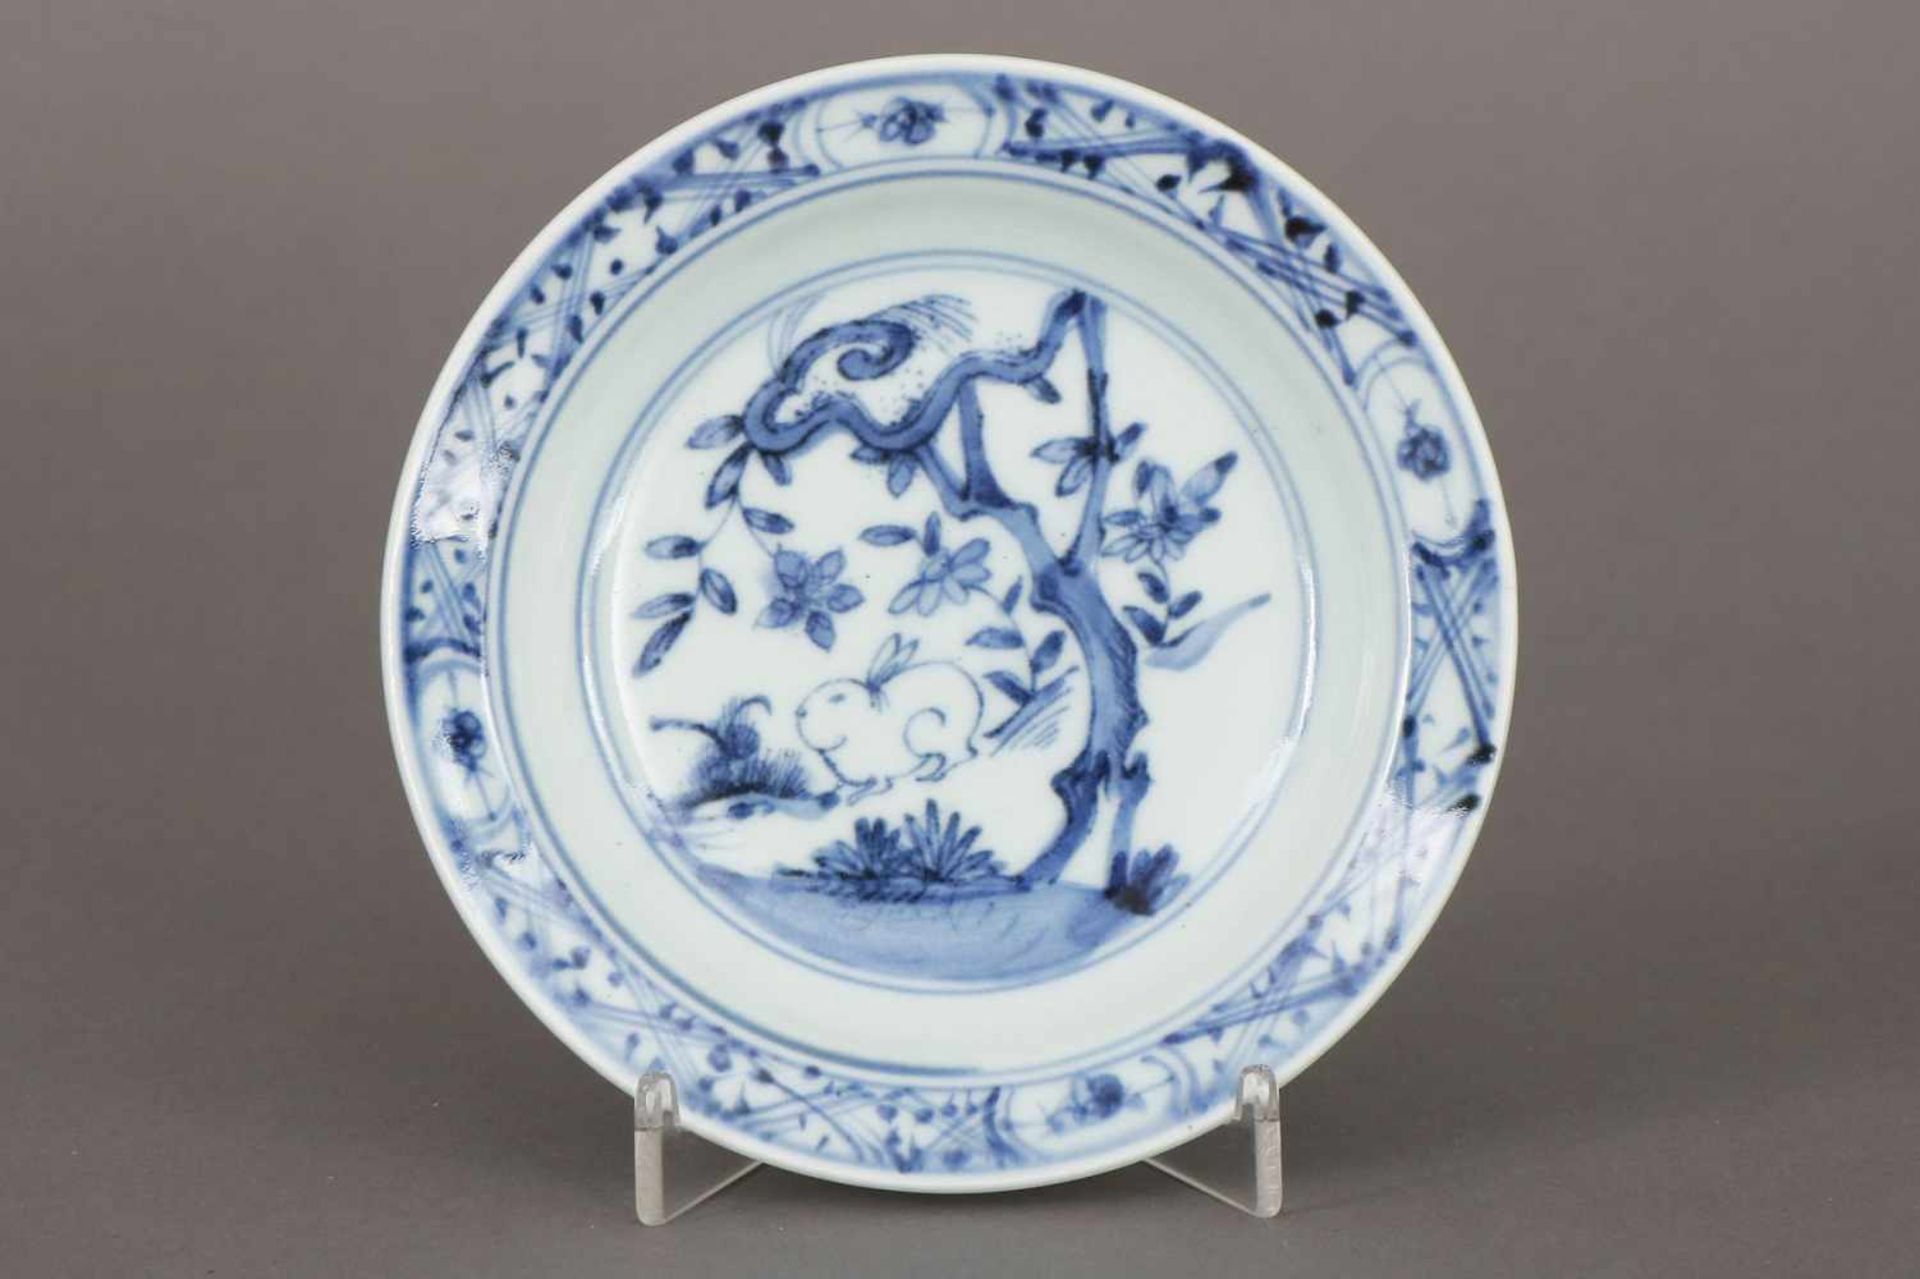 Chinesische Porzellanschale im Stile Mingrunde, vertiefte Schale, Blaumalerei, im Spiegel